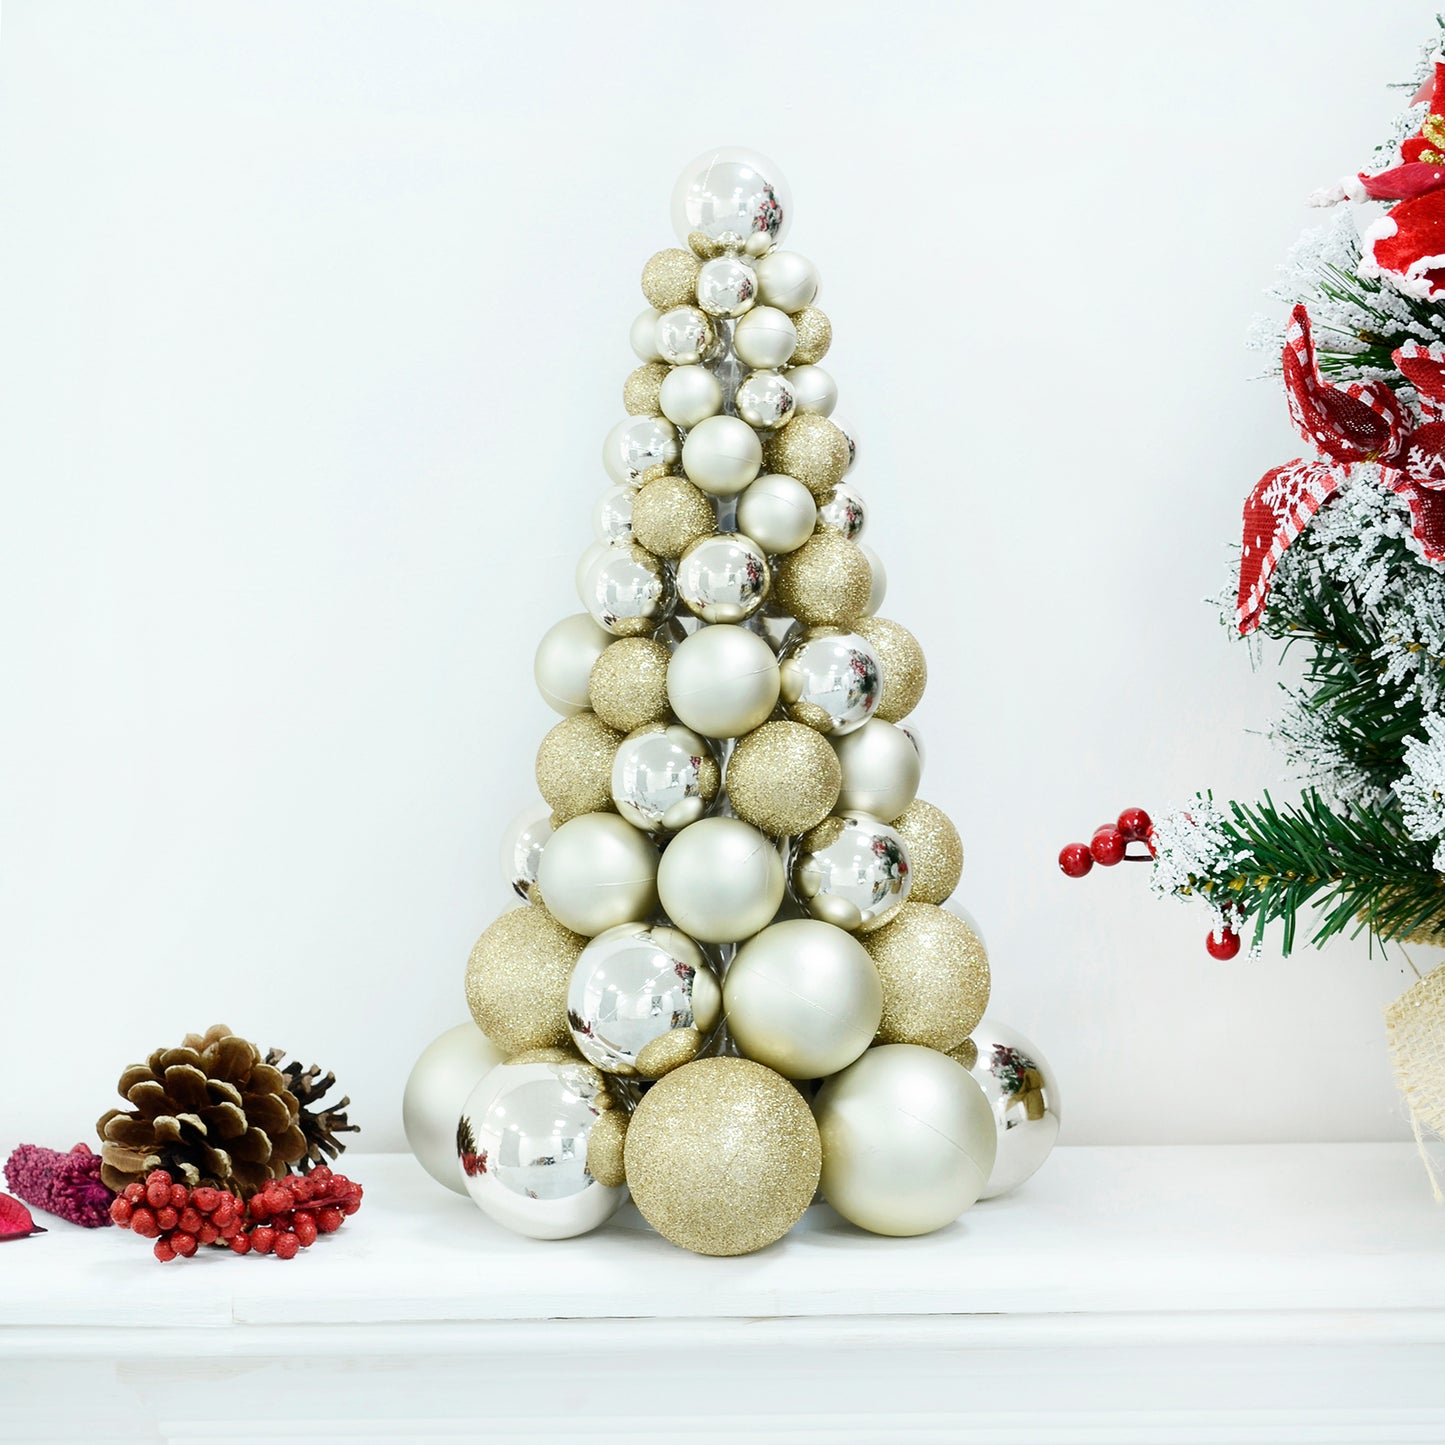 Mr Crimbo Mixed Bauble Tree Shaped Christmas Decoration 34cm - MrCrimbo.co.uk -XS7261 - Navy -bauble decorations